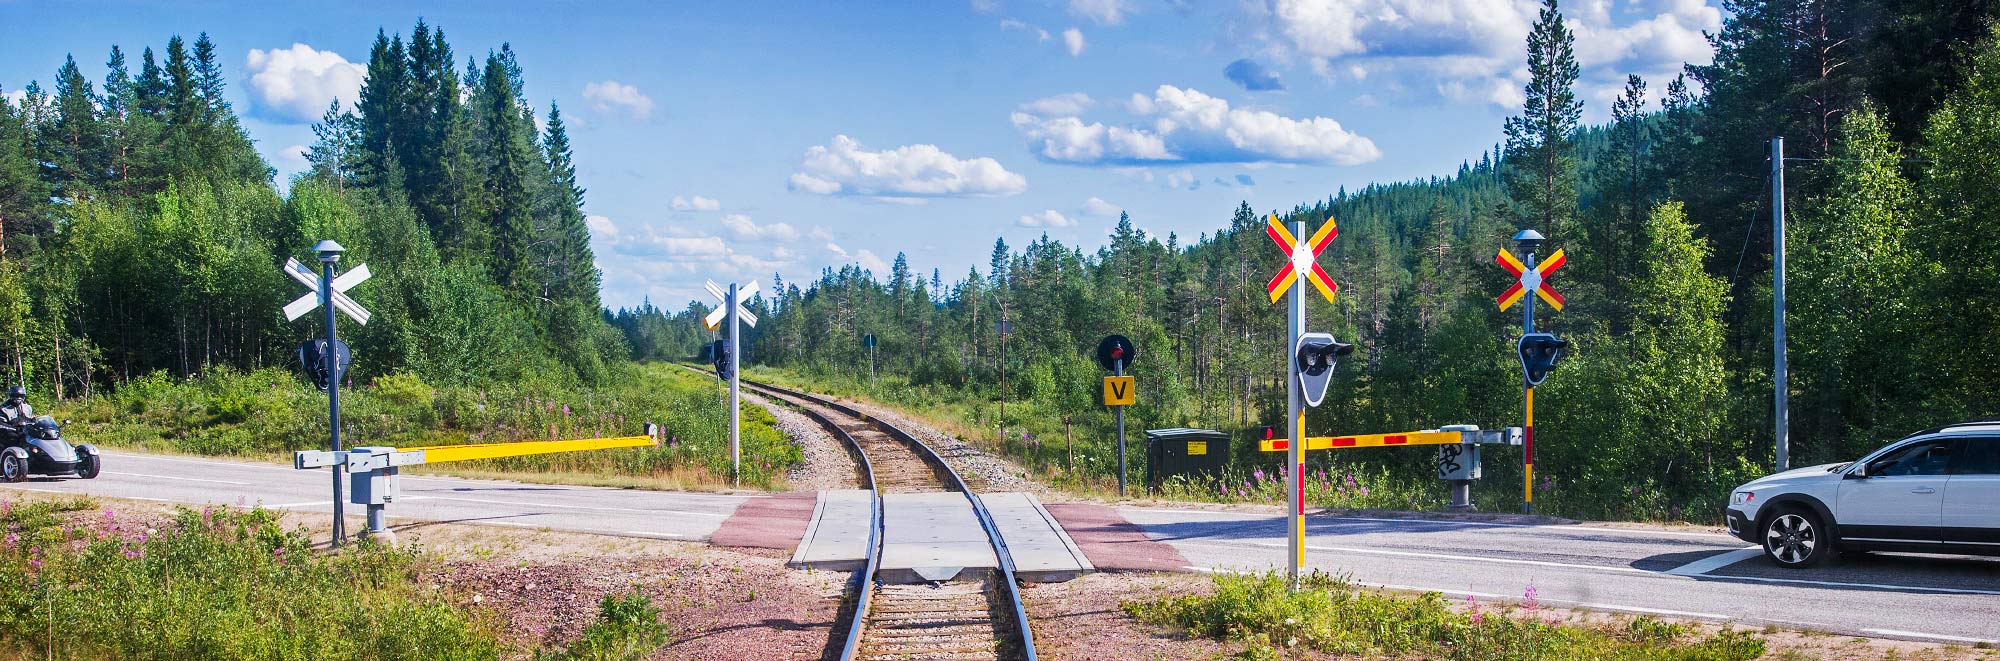 Vägkorsning på Inlandsbanan Mora-Östersund